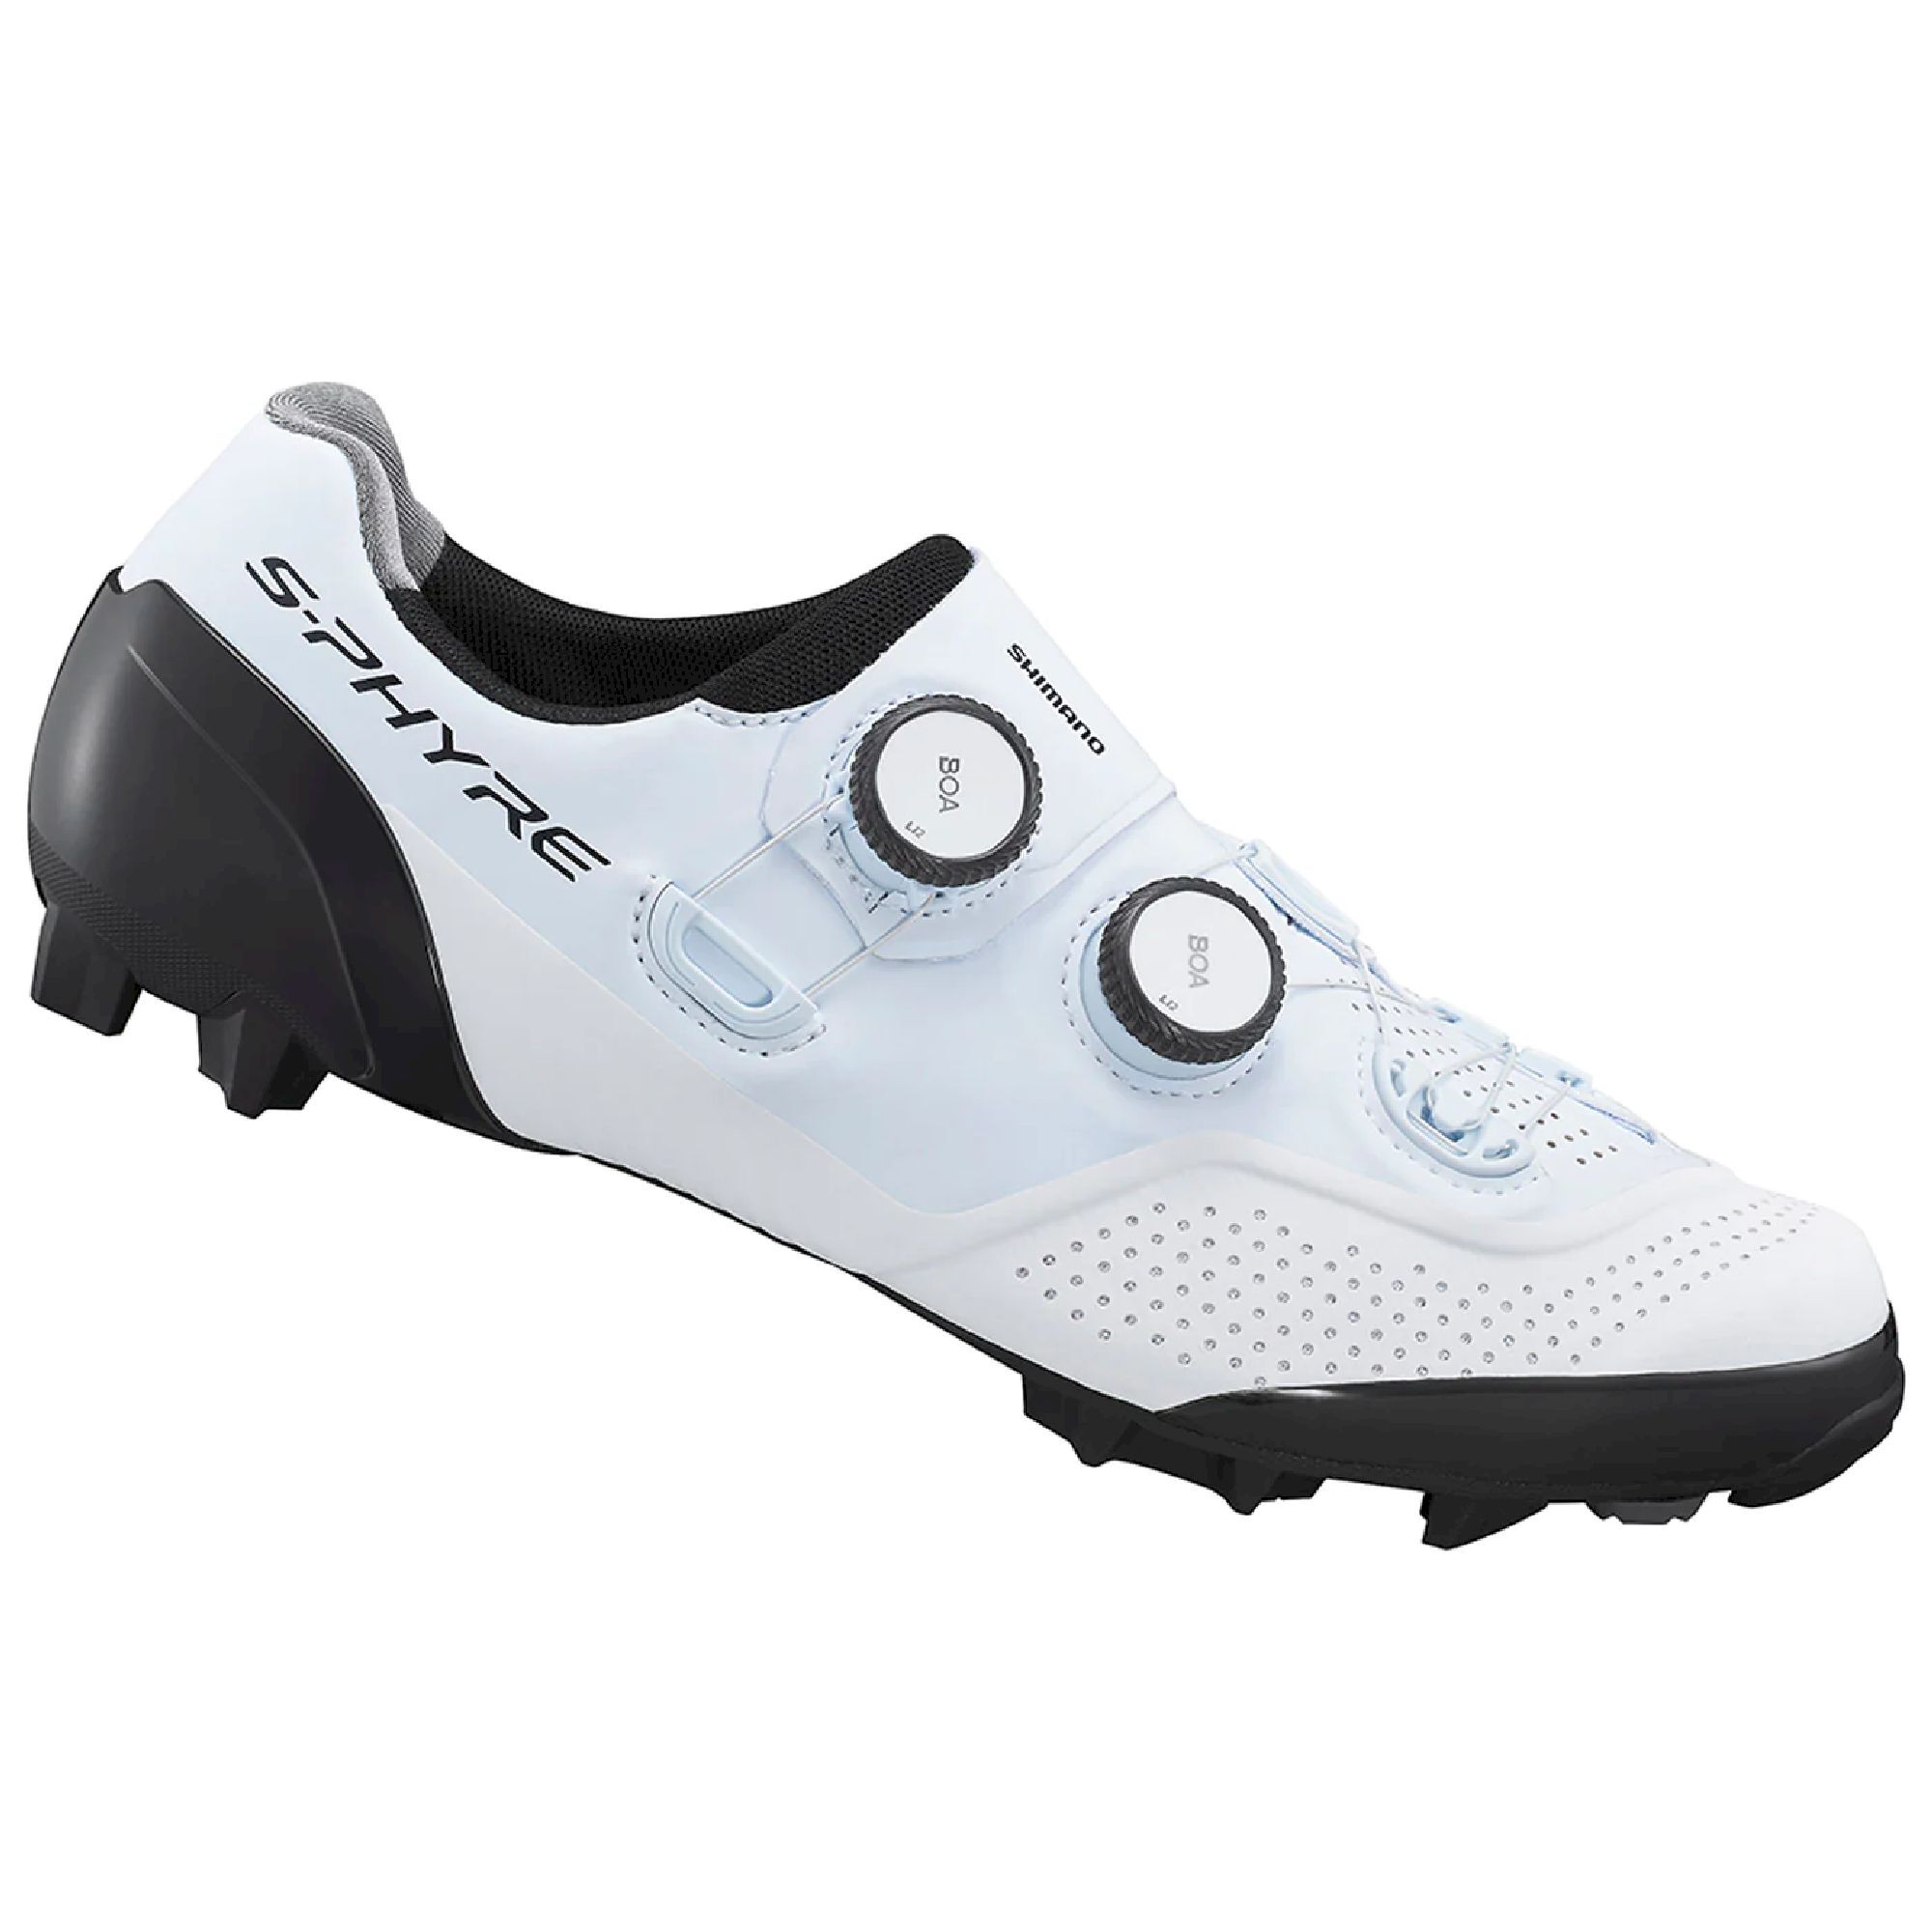 Shimano XC902 - Mountain Bike shoes - Men's